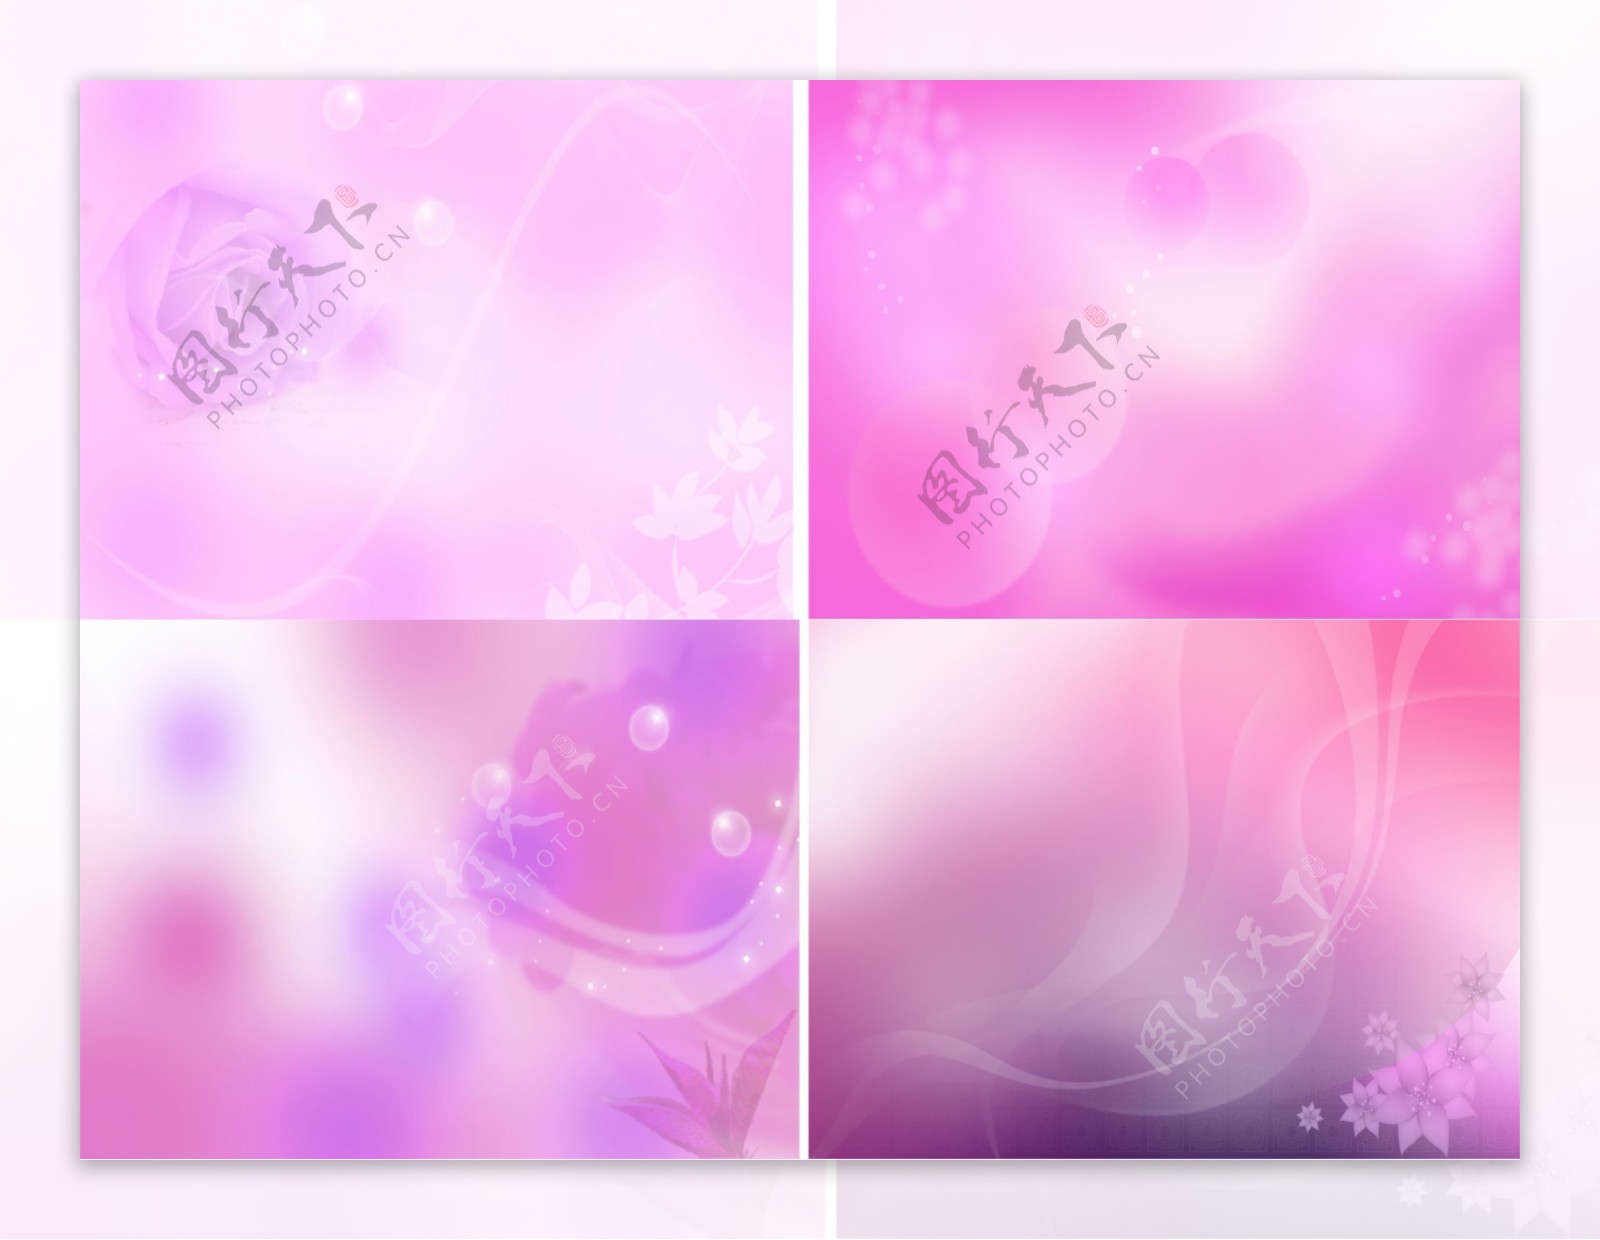 4款紫色梦幻背景图图片